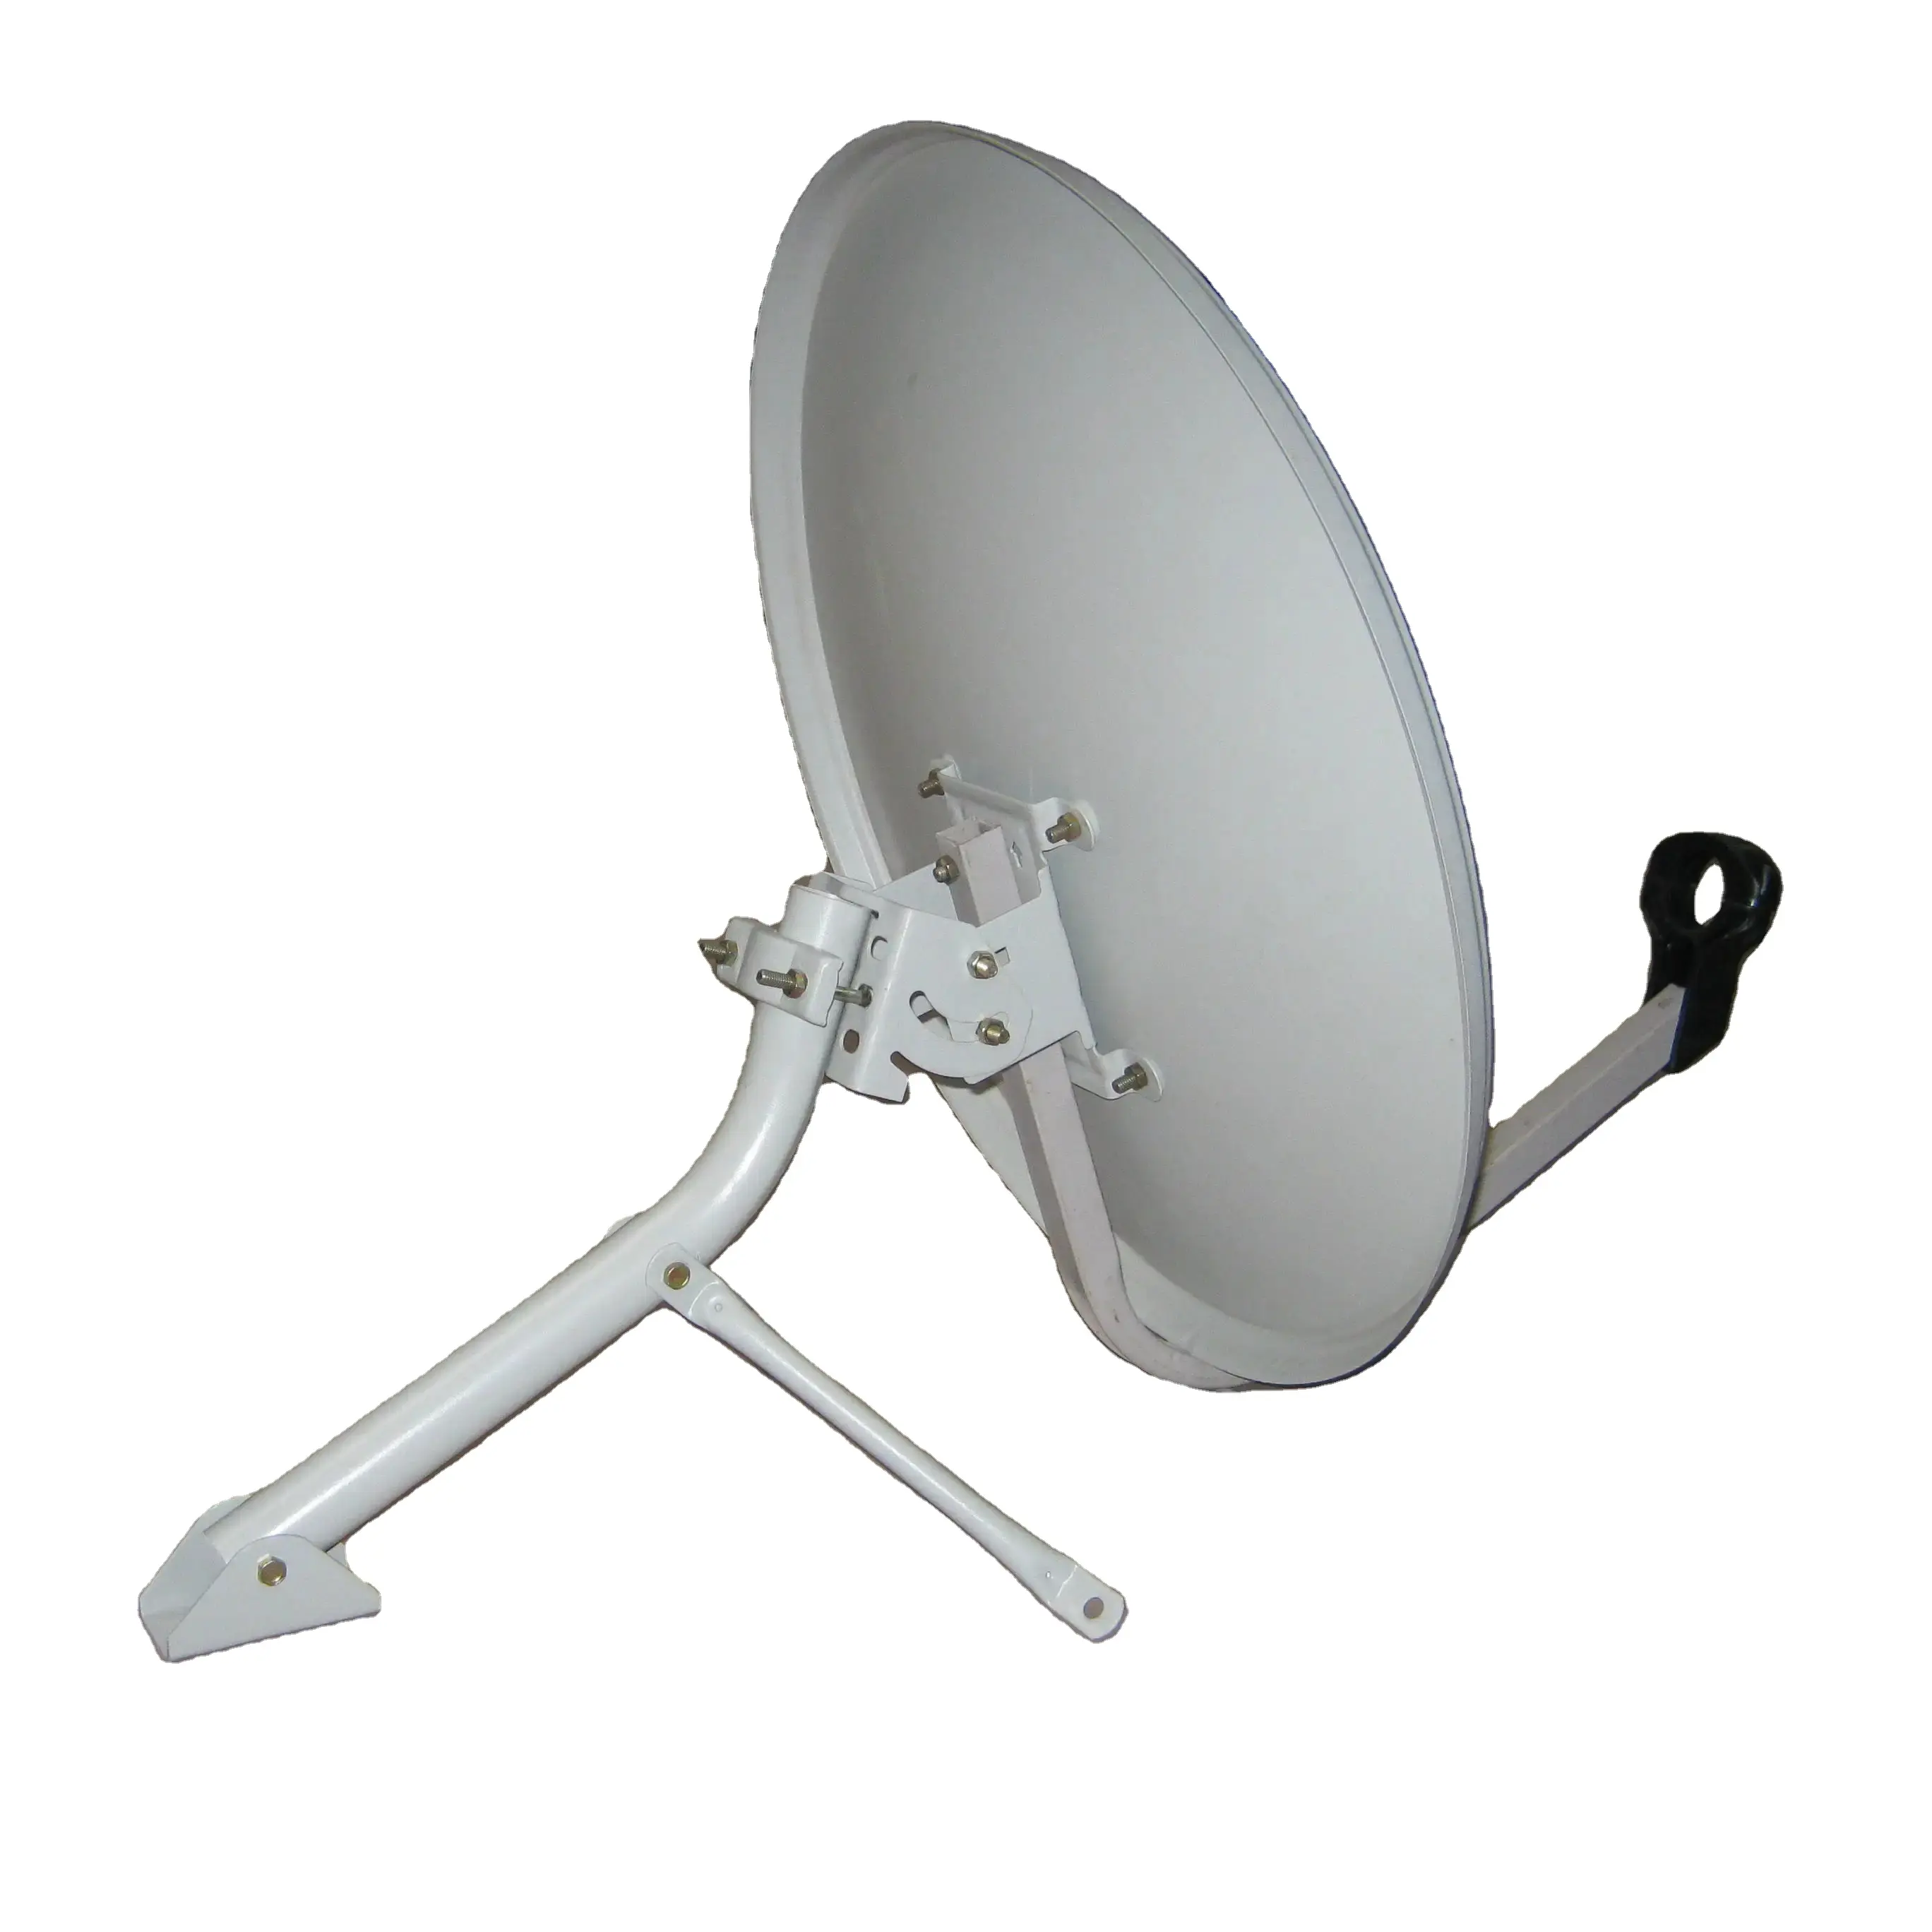 Haute qualité meilleur prix ku bande 60*65cm antenne tv antenne satellite haute qualité